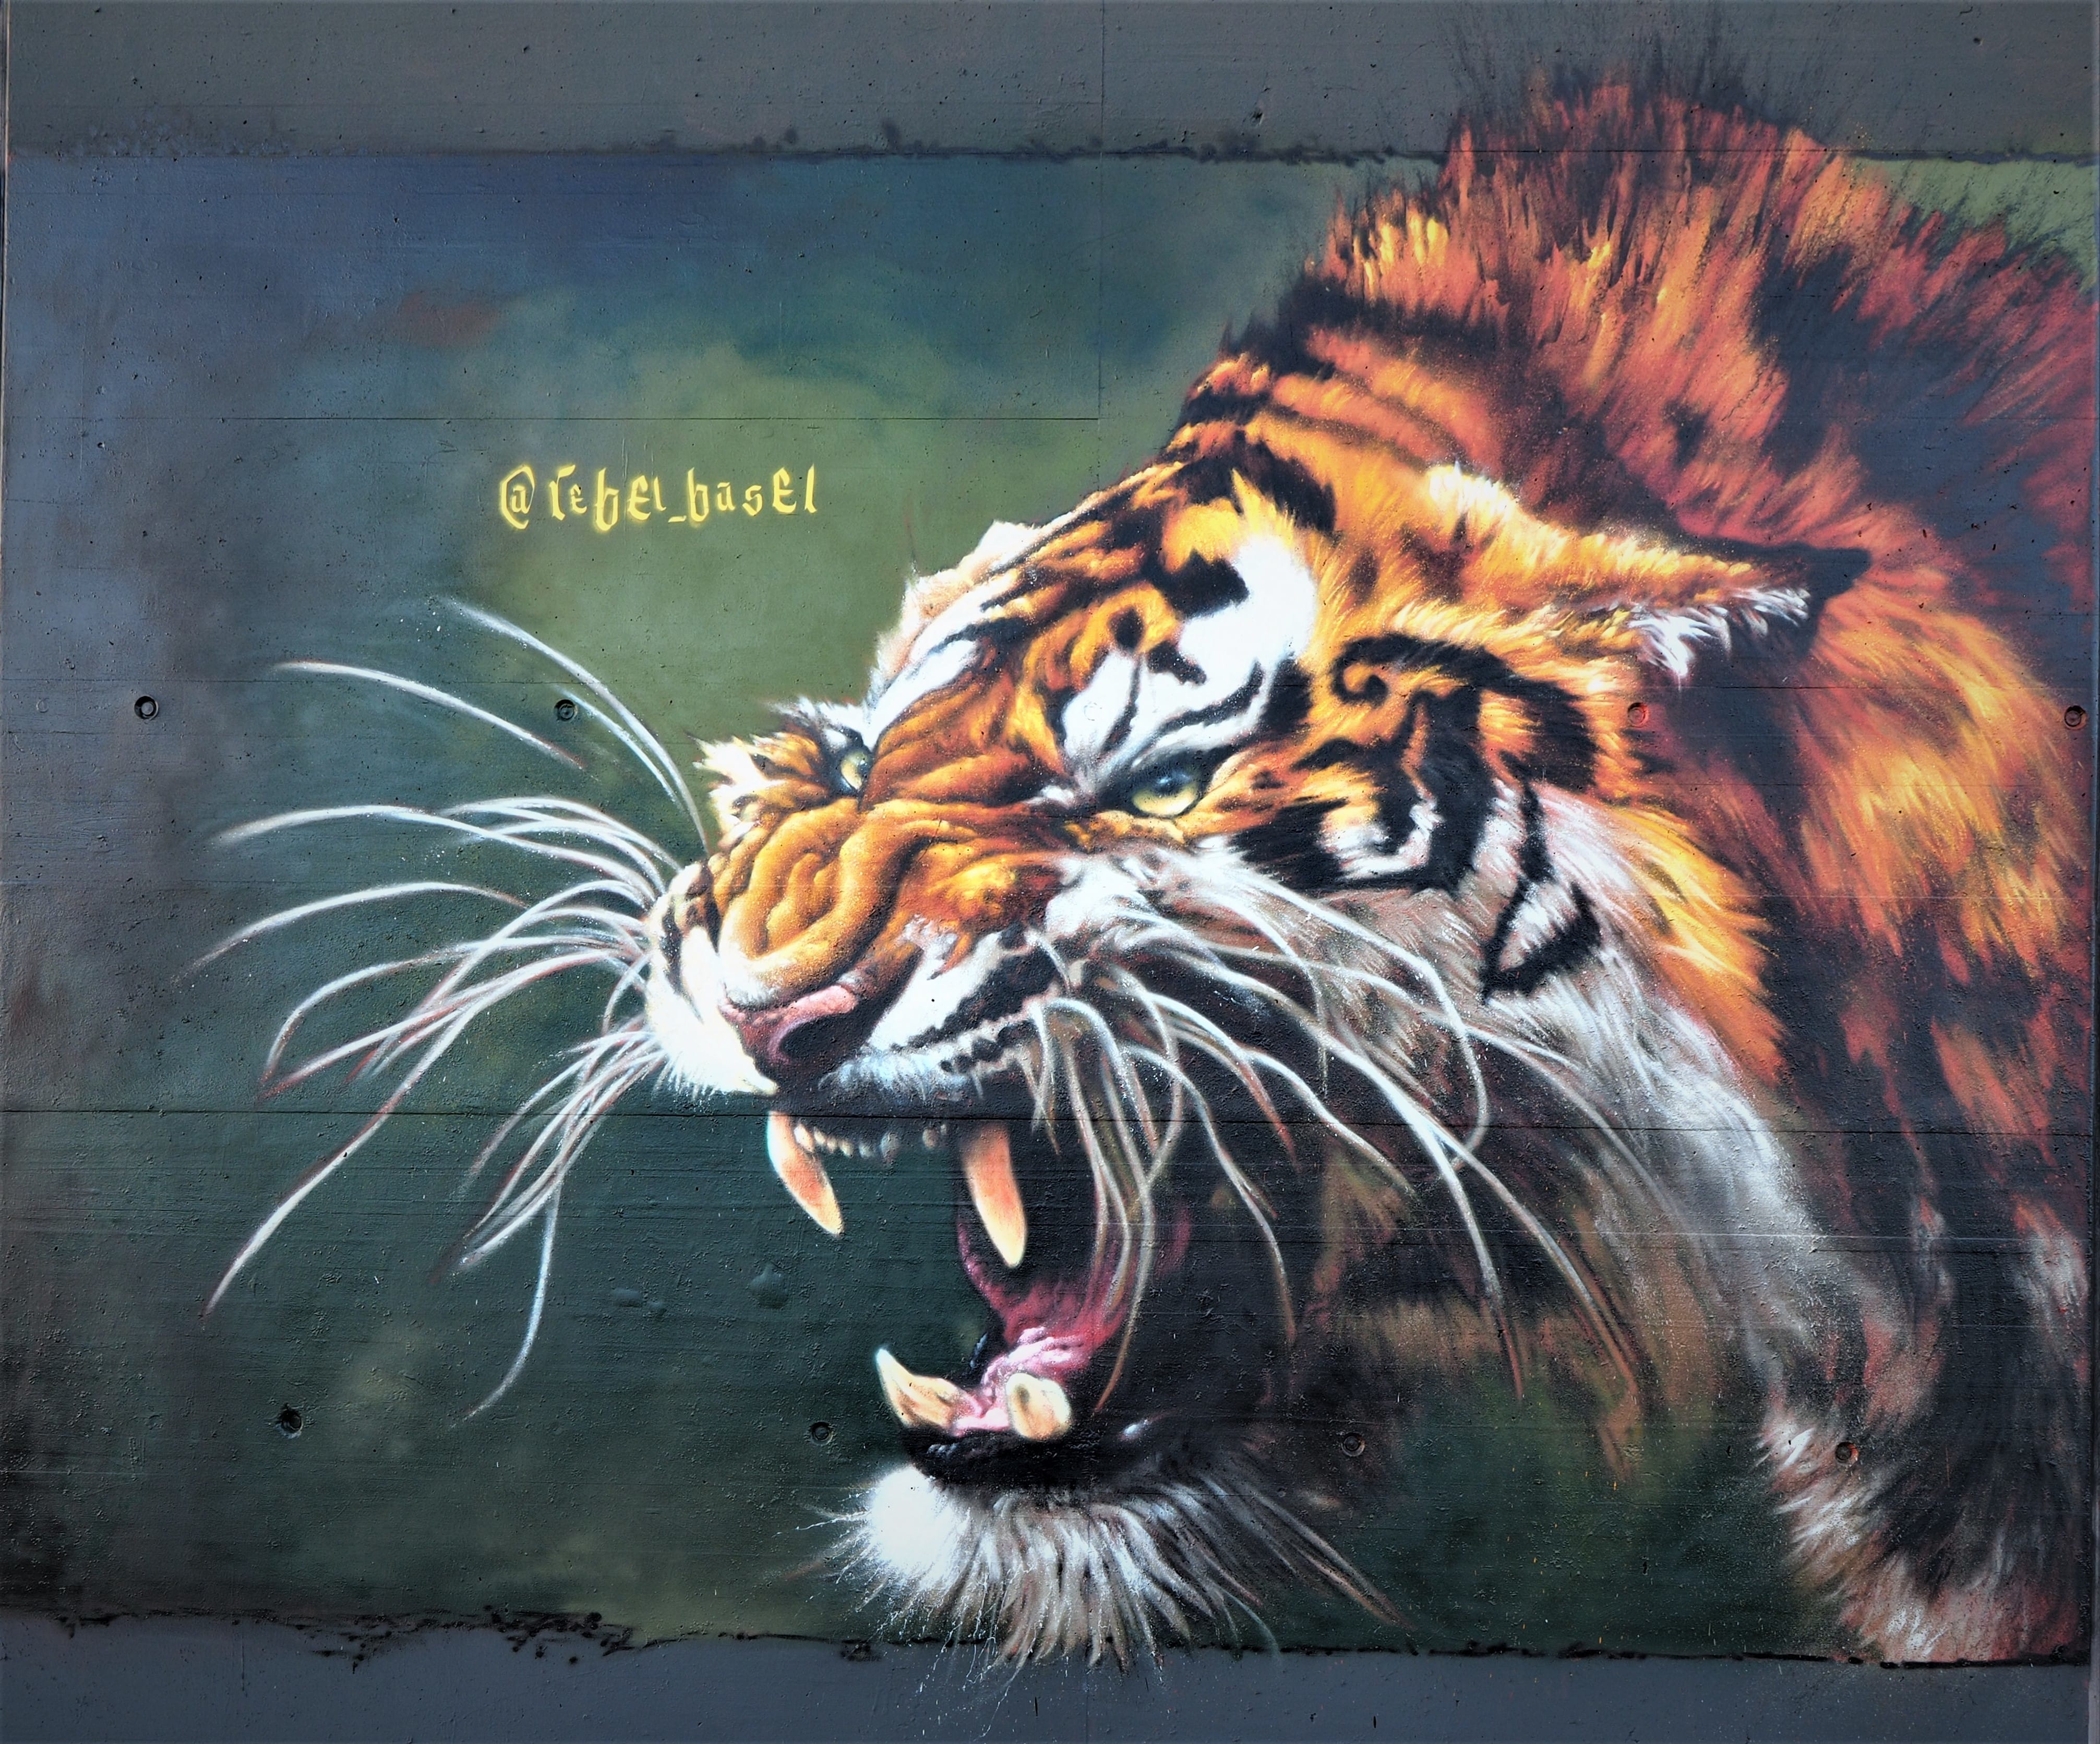 Graffiti 5844 wild tiger captured by stewi in Basel Schweiz